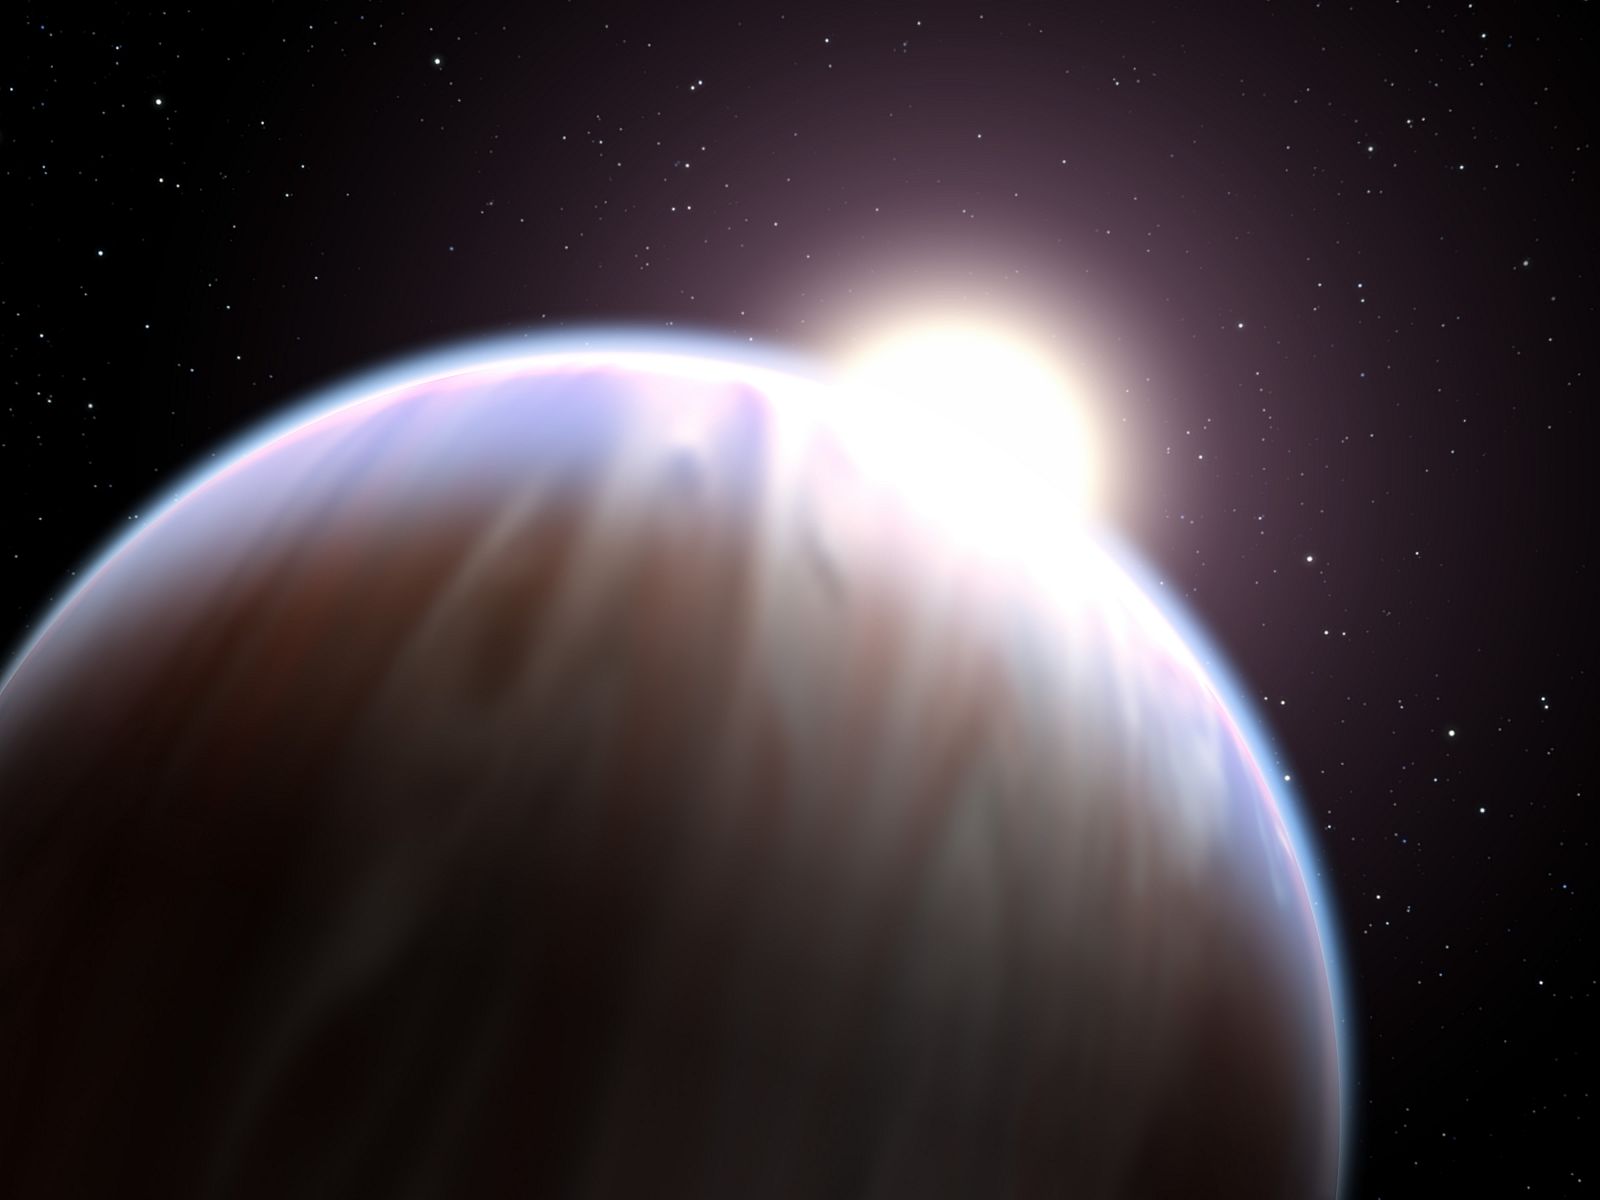 El exoplaneta denominado HD189733b. Las observaciones fueron realizadas con el Telescopio Óptico Nórdico en el ultravioleta, en el azul, y en el verde, e indican que el planeta en cuestión es más brillante en el azul